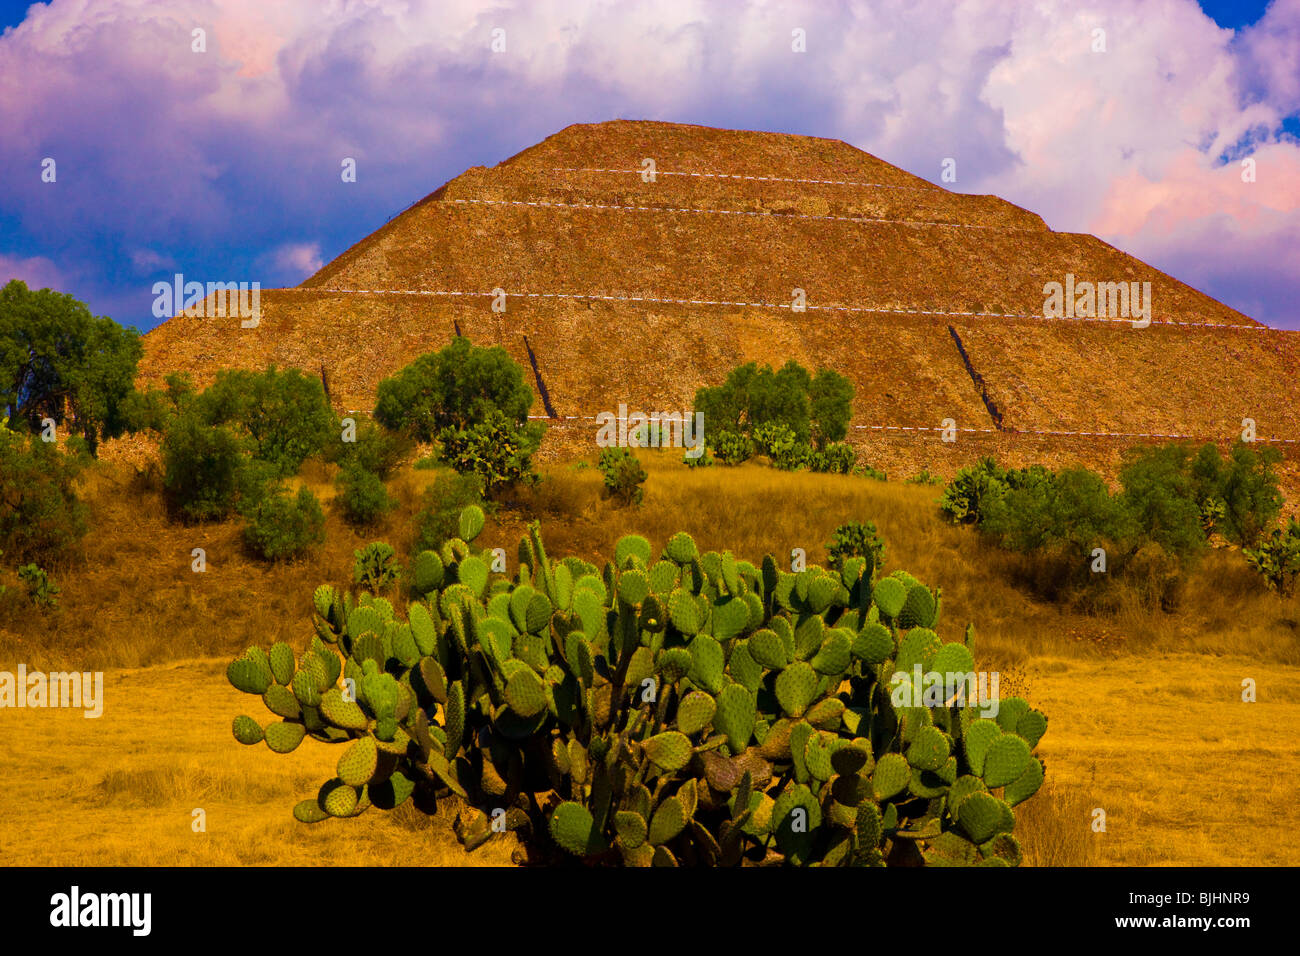 El Templo del Sol, la Pirámide de Teotihuacán, México, más de 70 metros de altura, la pirámide más grande del mundo, el templo azteca construido 100 D.C. Foto de stock